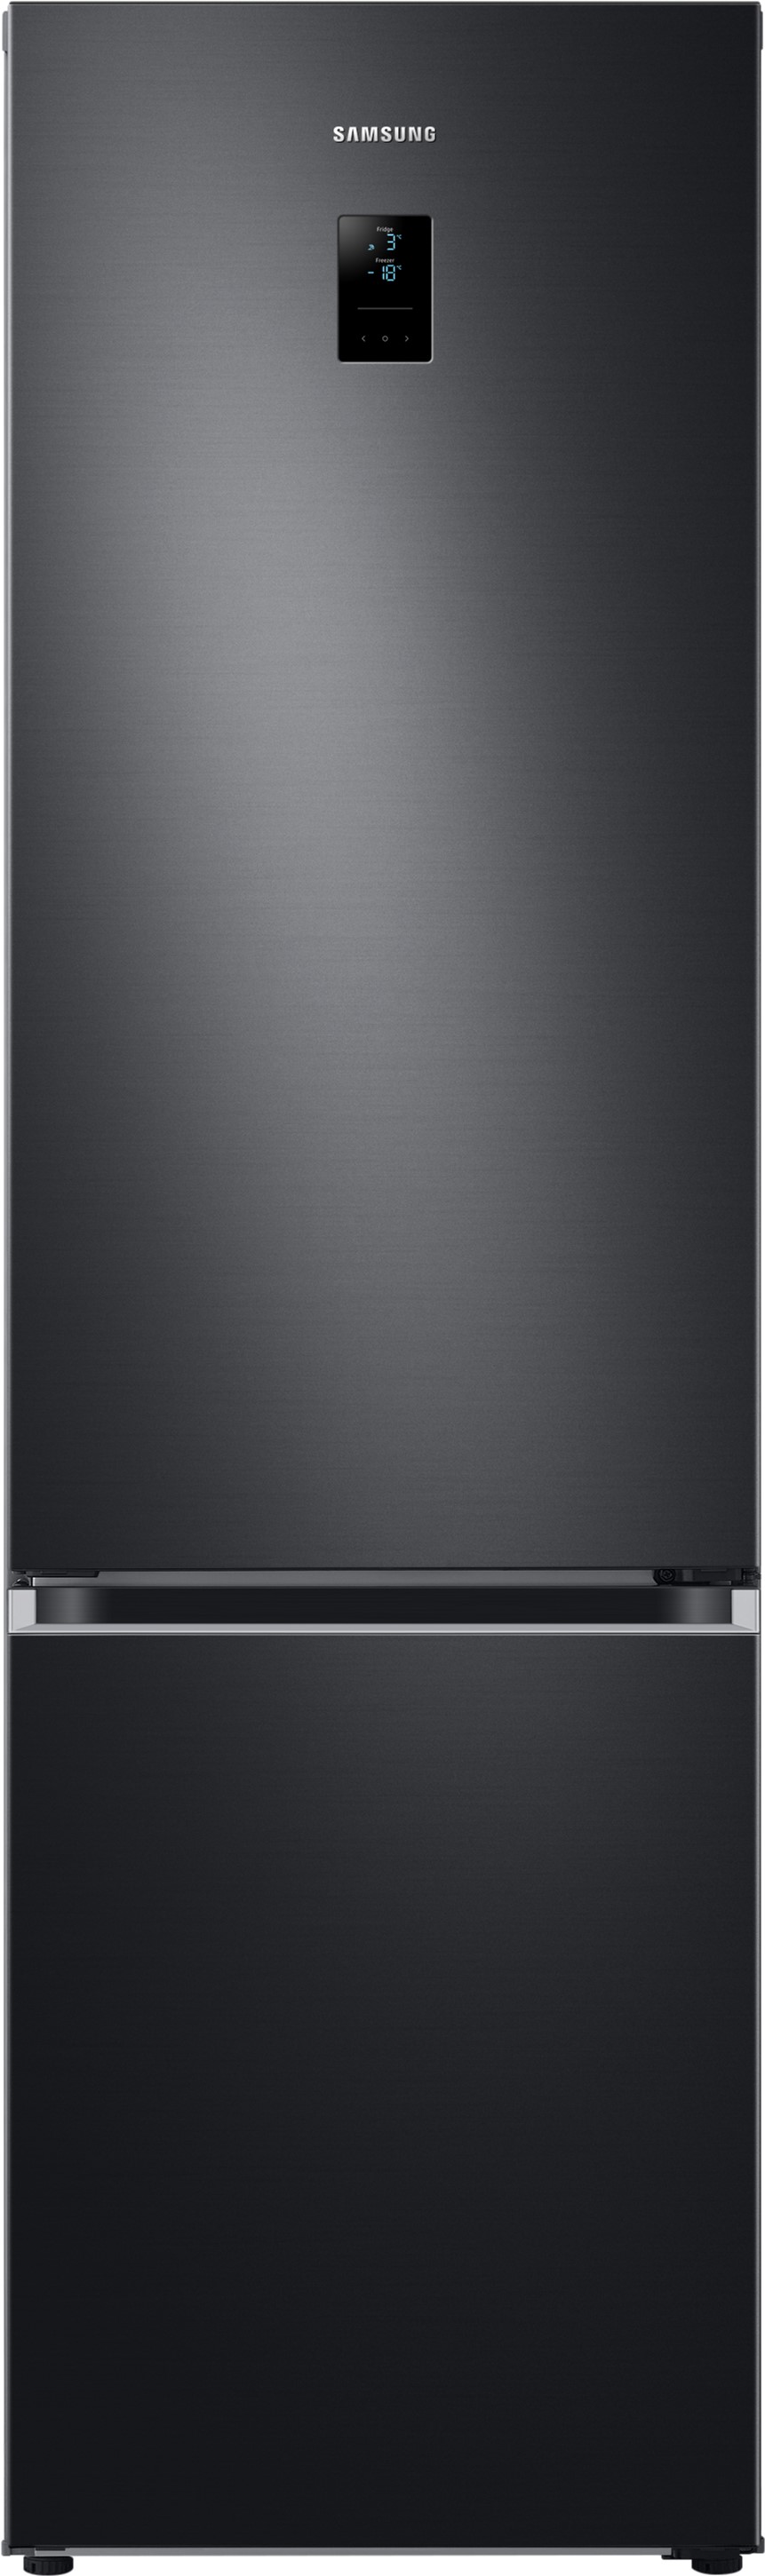 Холодильник Samsung RB38C679EB1/UA в интернет-магазине, главное фото